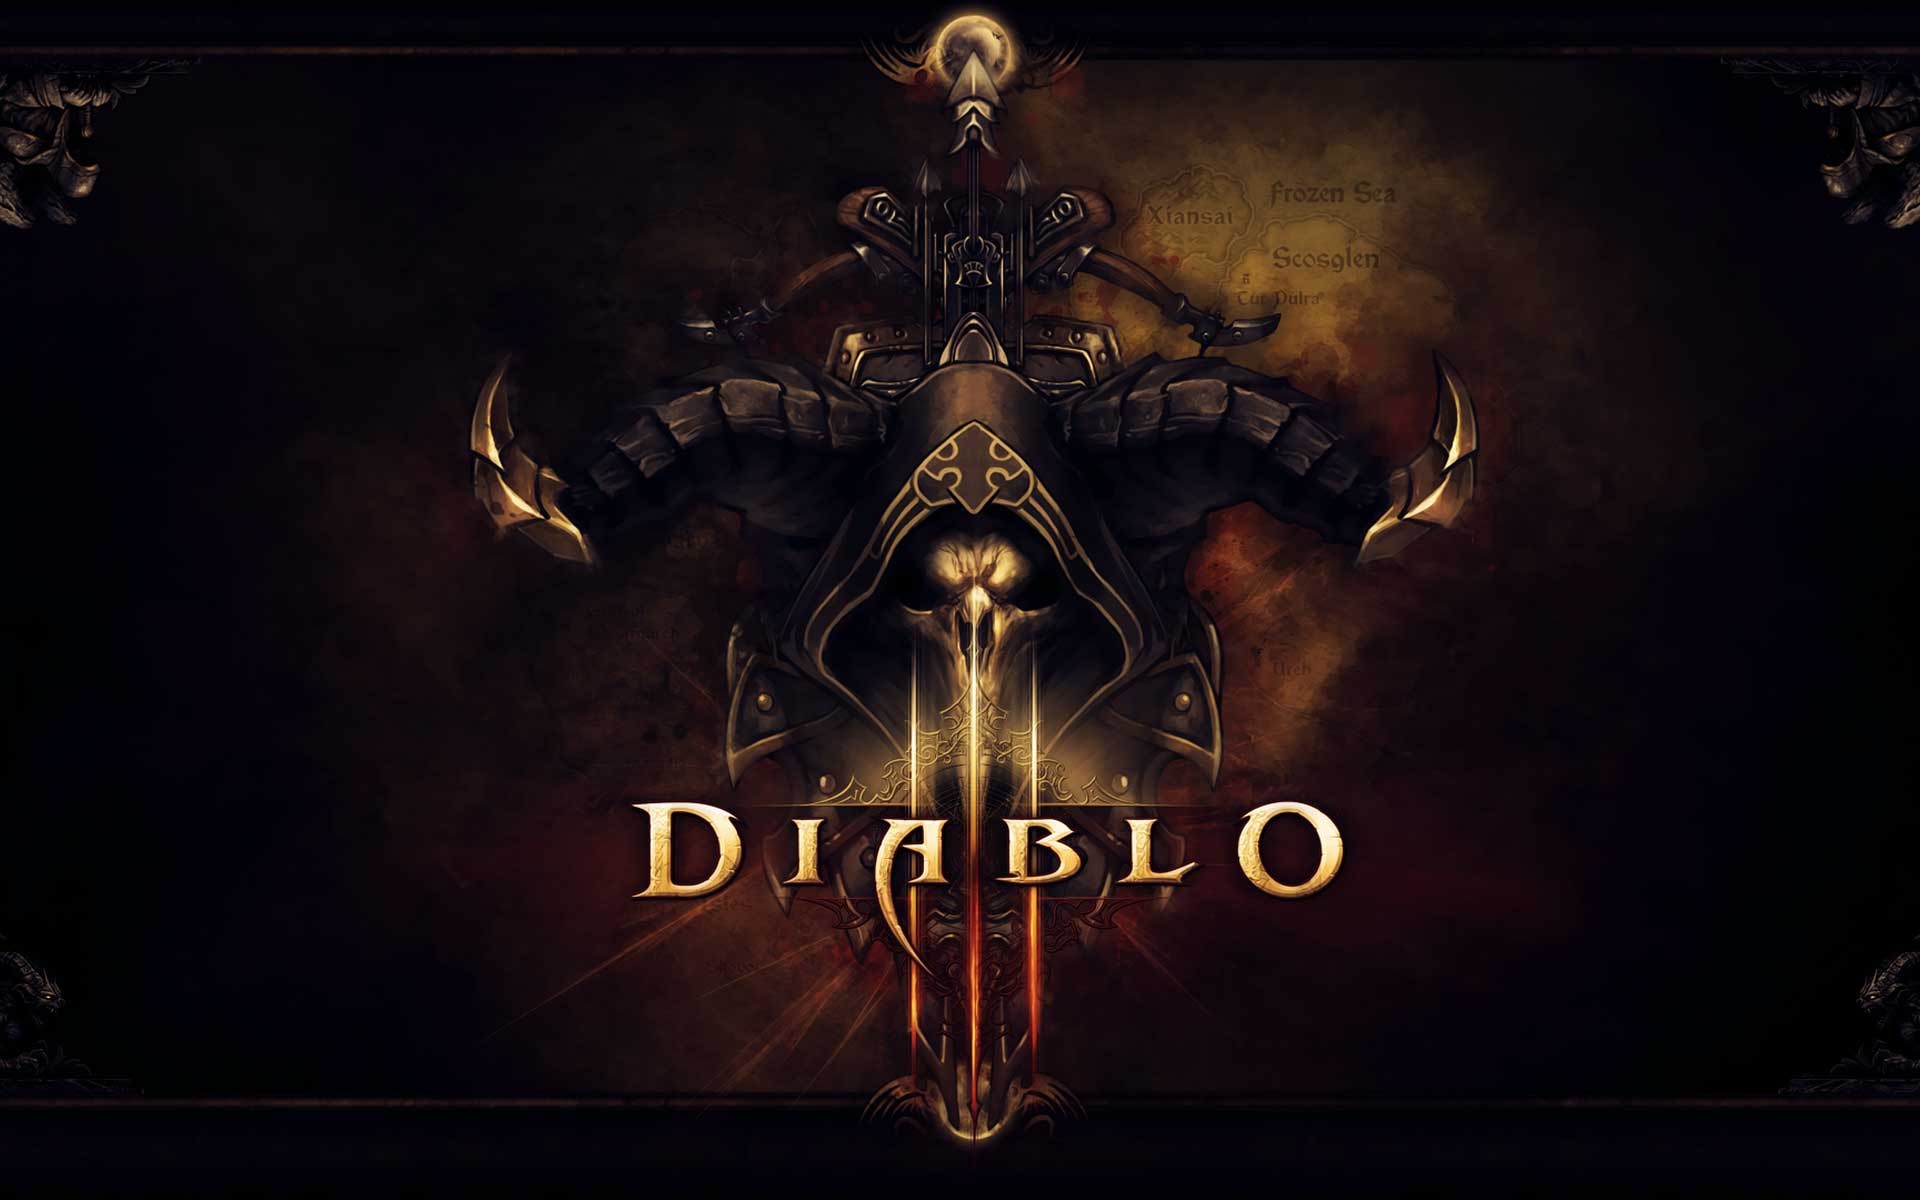 Show me your D3 wallpapers! : Diablo